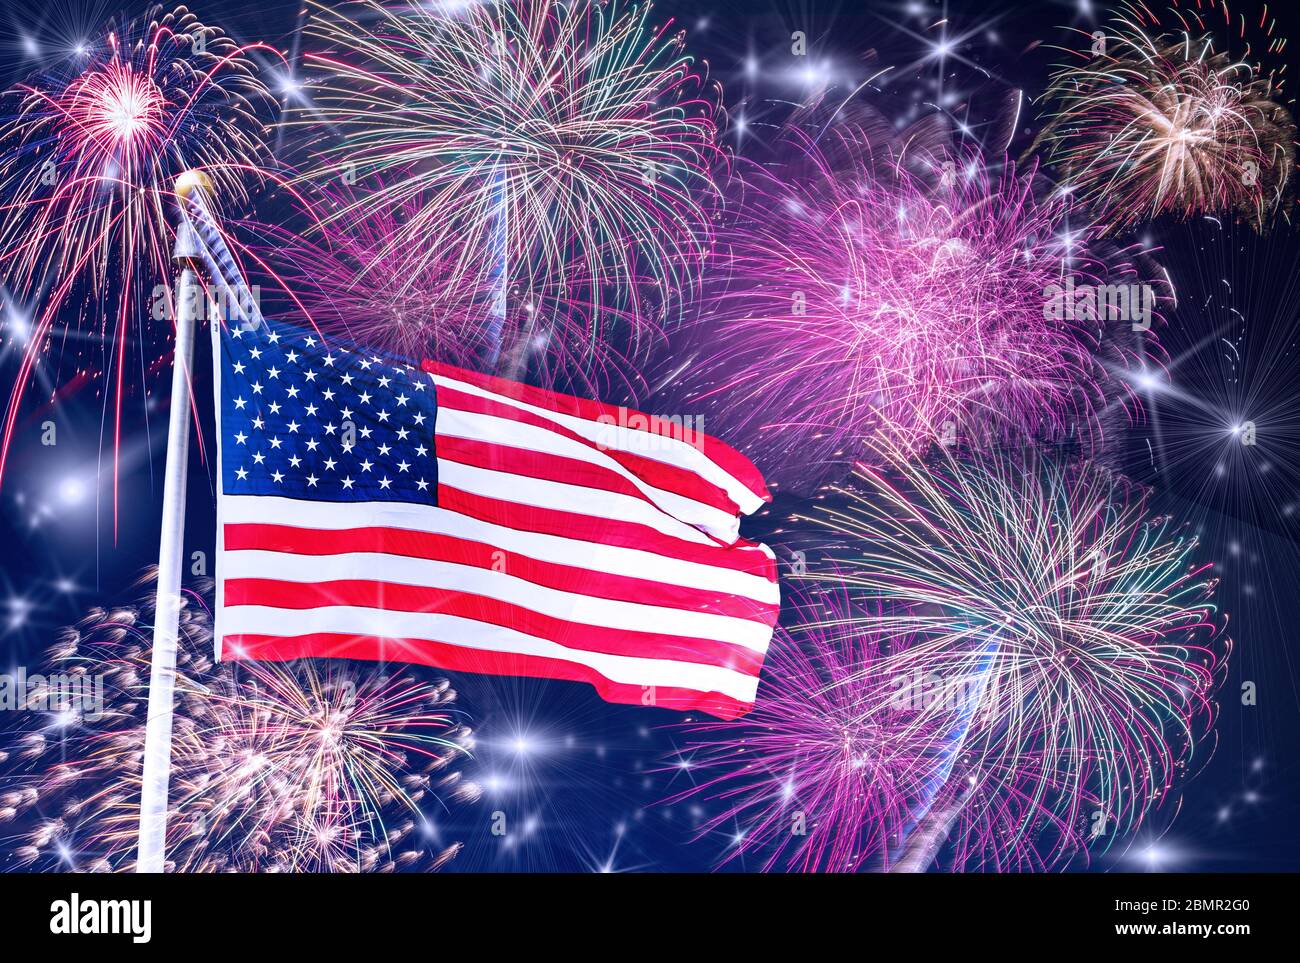 American Celebration - USA Flagge und Feuerwerk EINE US Flagge auf Fahnenmast mit Feuerwerk, Sternen und dunkelblauem Himmel im Hintergrund. 4. Juli/ Memorial Day Stockfoto